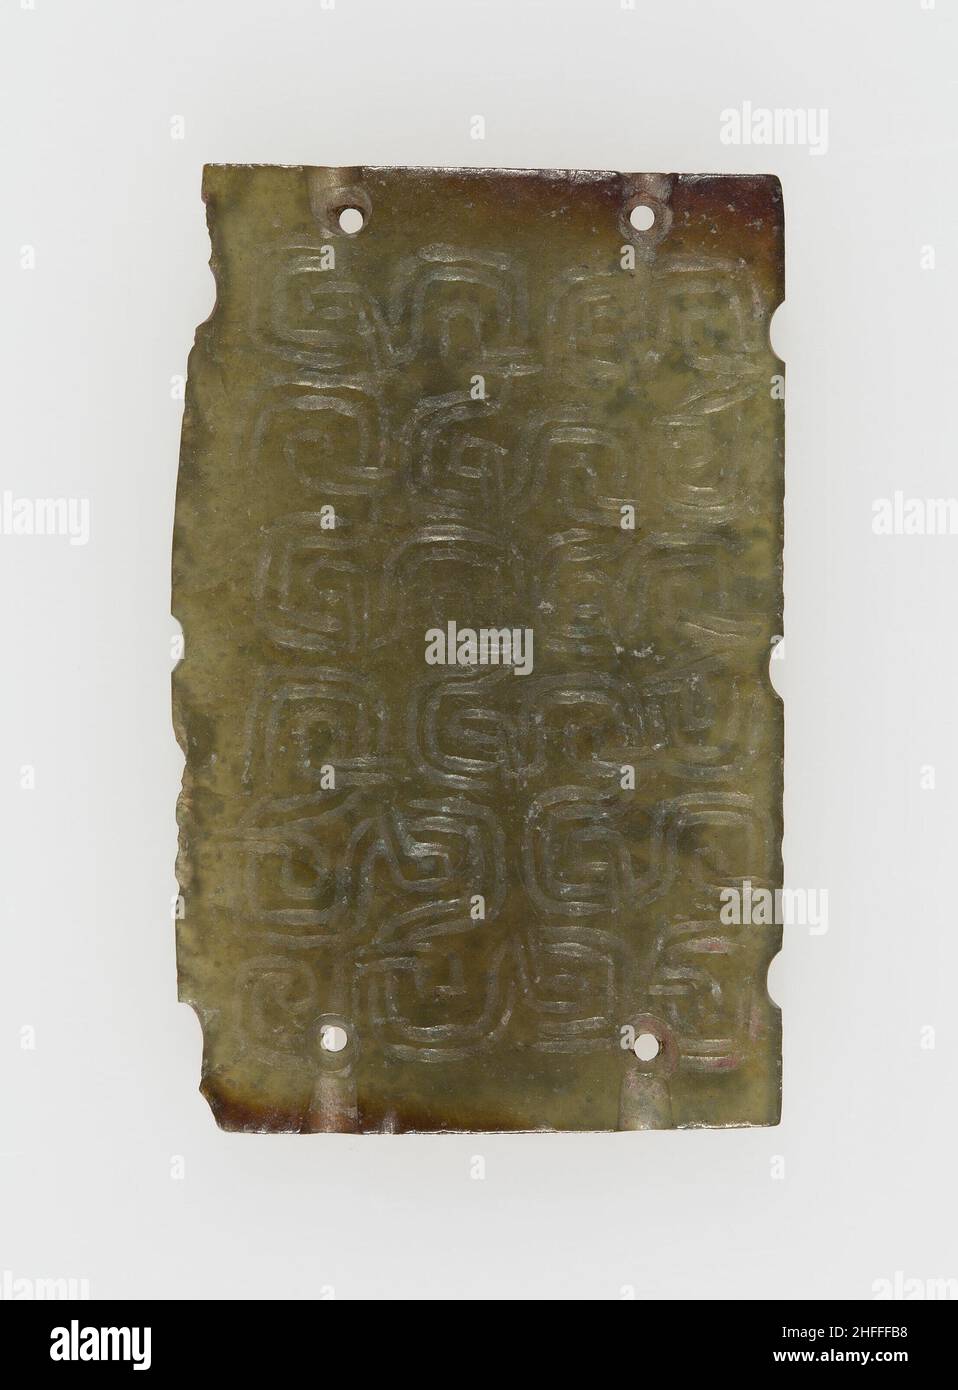 Gedenktafel mit verketteten Schriftrollen, östliche Zhou-Zeit, 7th. Jahrhundert v. Chr. Stockfoto